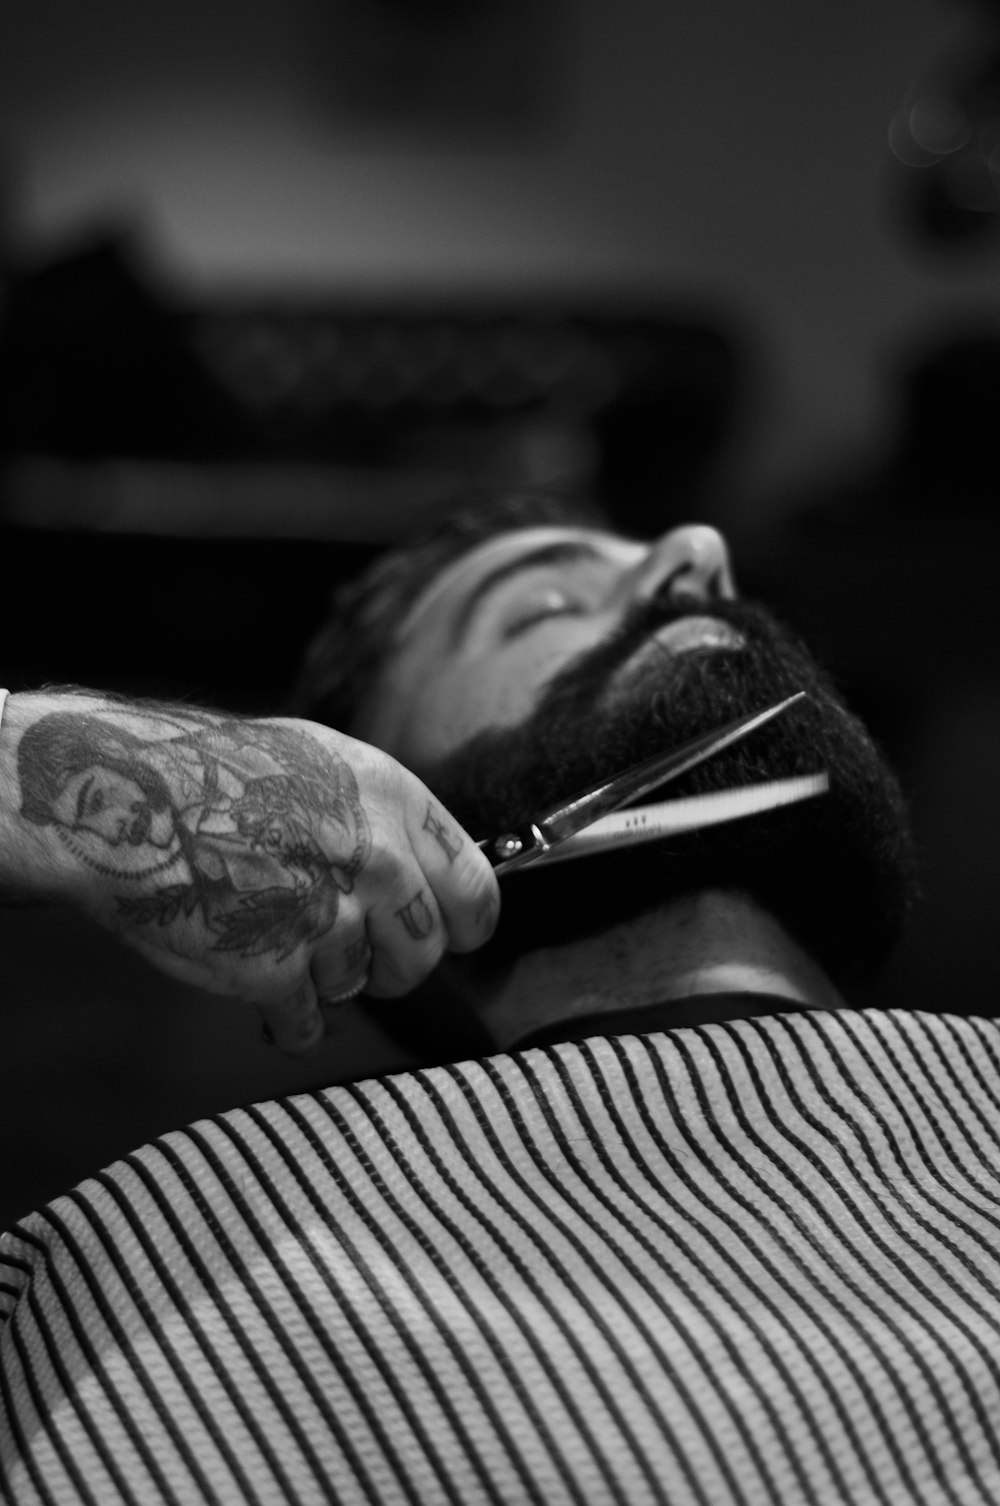 fotografia em tons de cinza da pessoa segurando tesoura cortando a barba do homem